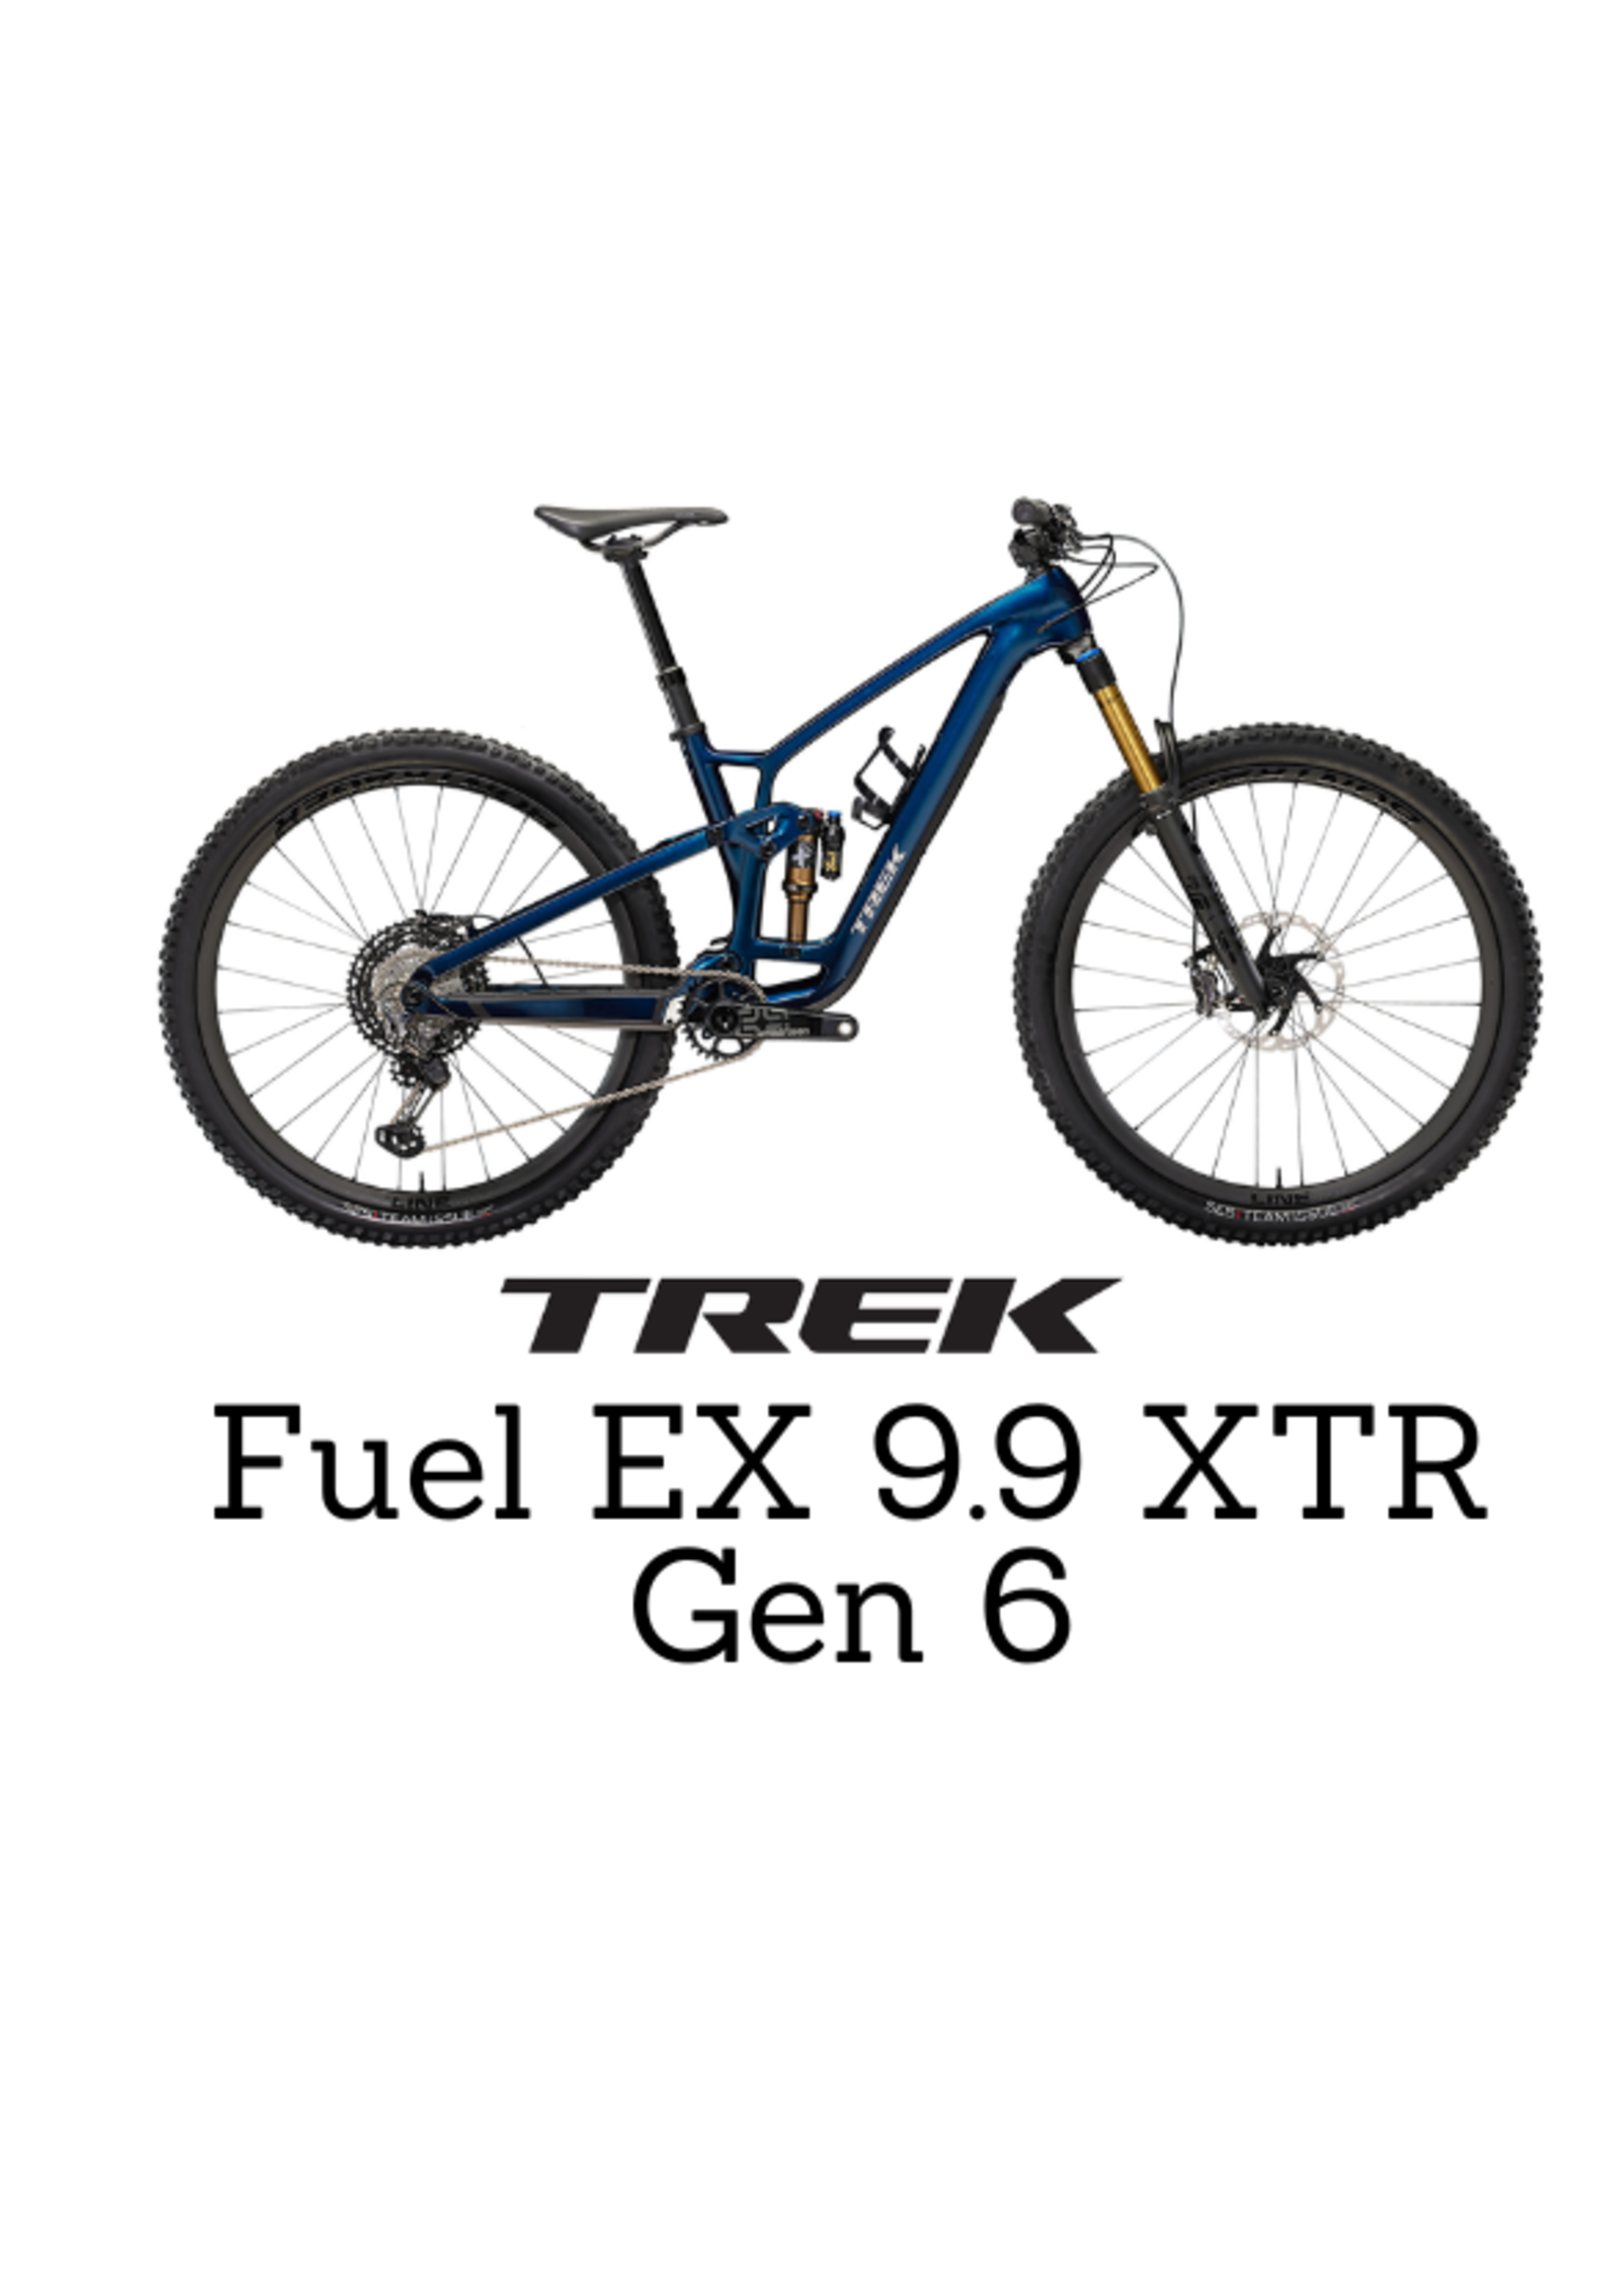 TREK Trek Fuel EX 9.9 XTR Gen 6